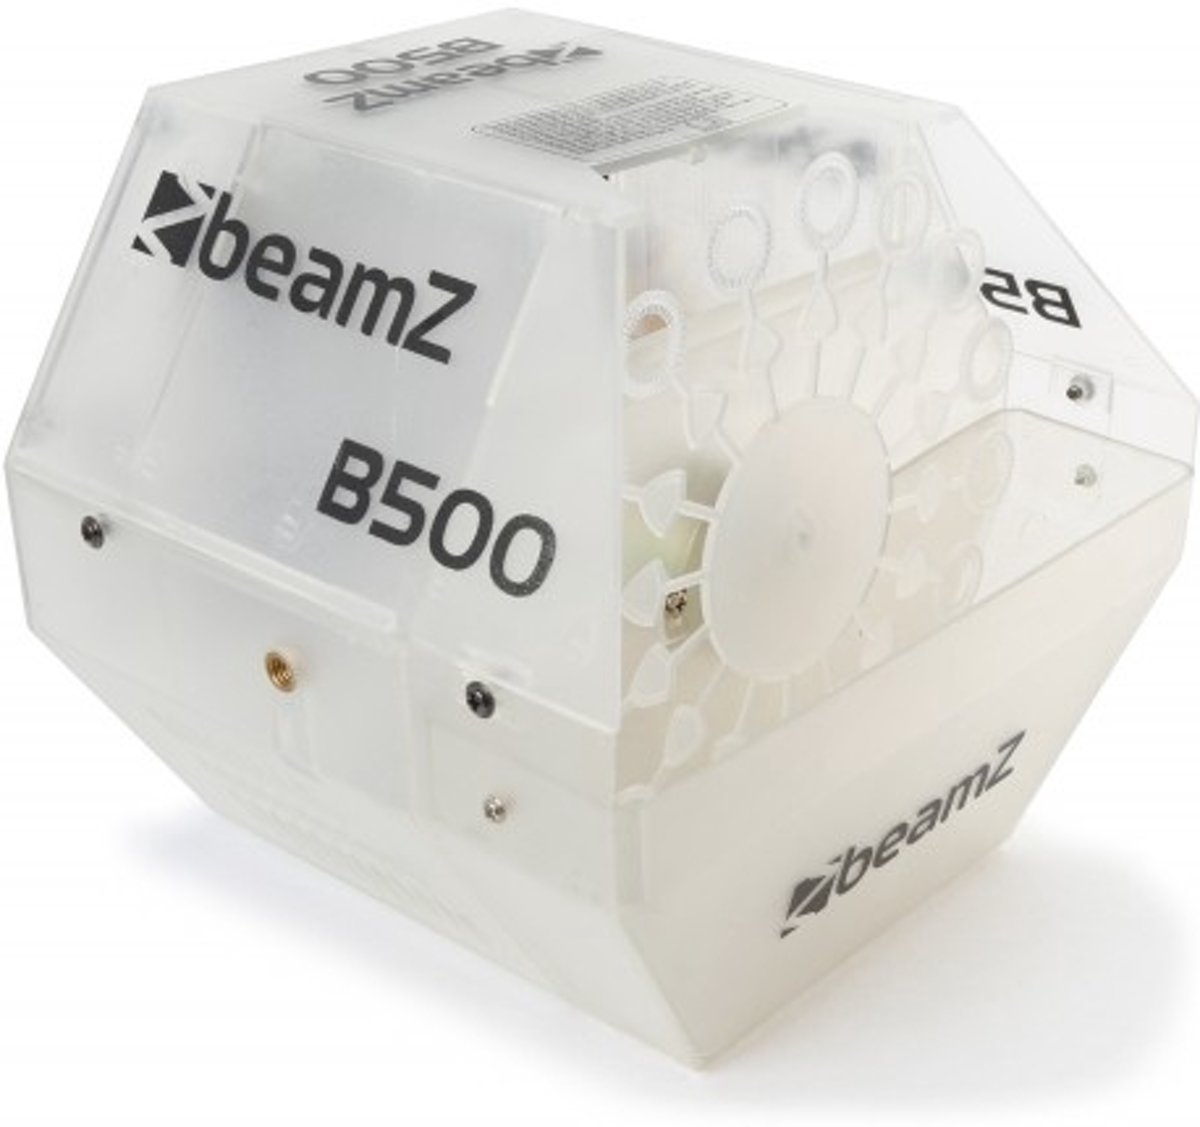 Bellenblaasmachine - BeamZ B500LED bellenblaasmachine met kleurrijke behuizing